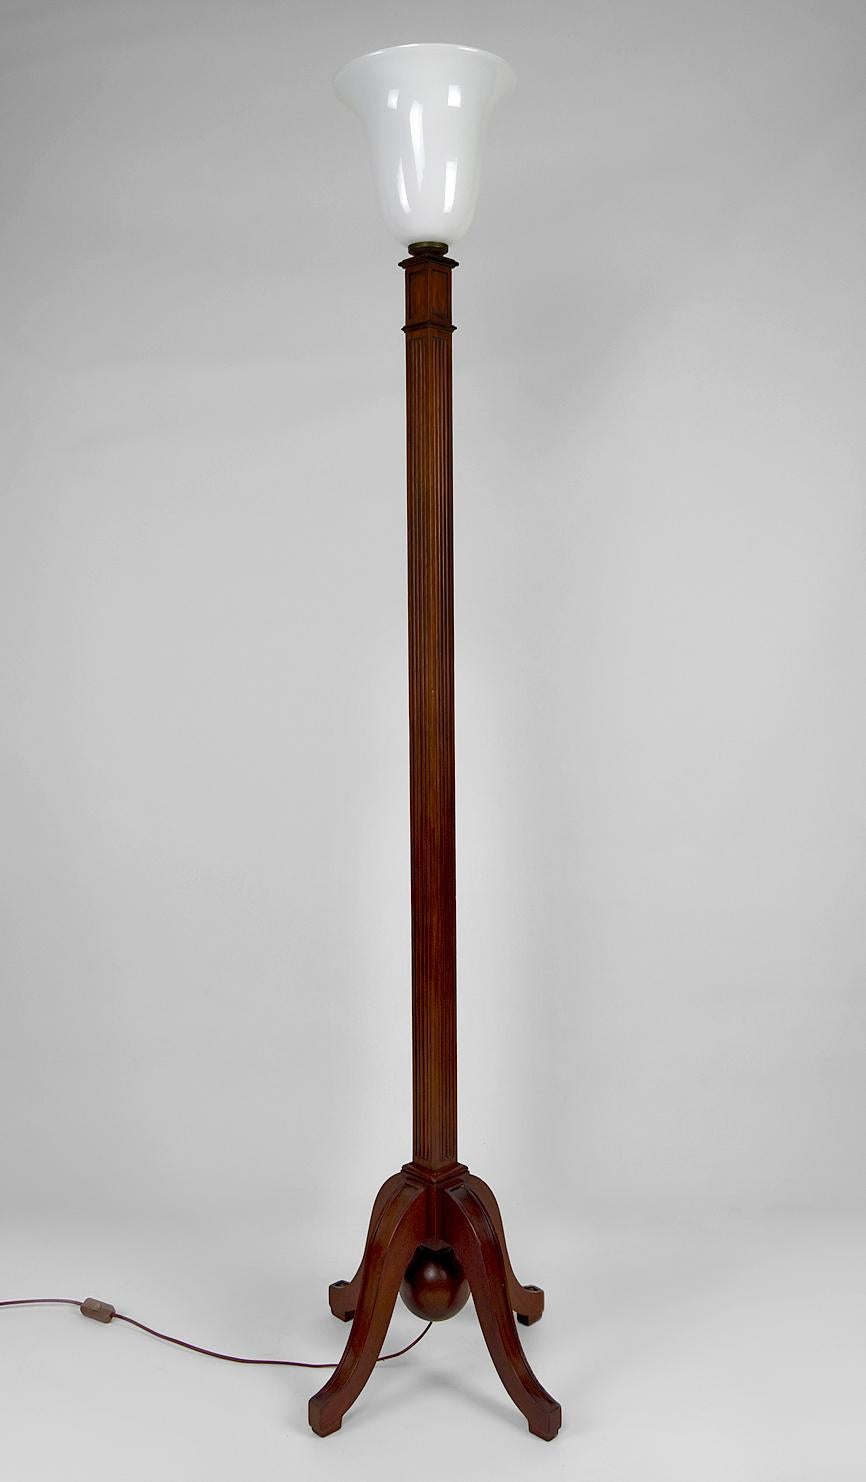 Magnifique lampadaire en bois de hêtre sculpté avec une base quadripode. Son abat-jour en opaline blanche de type Mazda est soutenu par un couvercle en laiton patiné.

Art déco, France, vers 1920-1925.

En très bon état, restauration